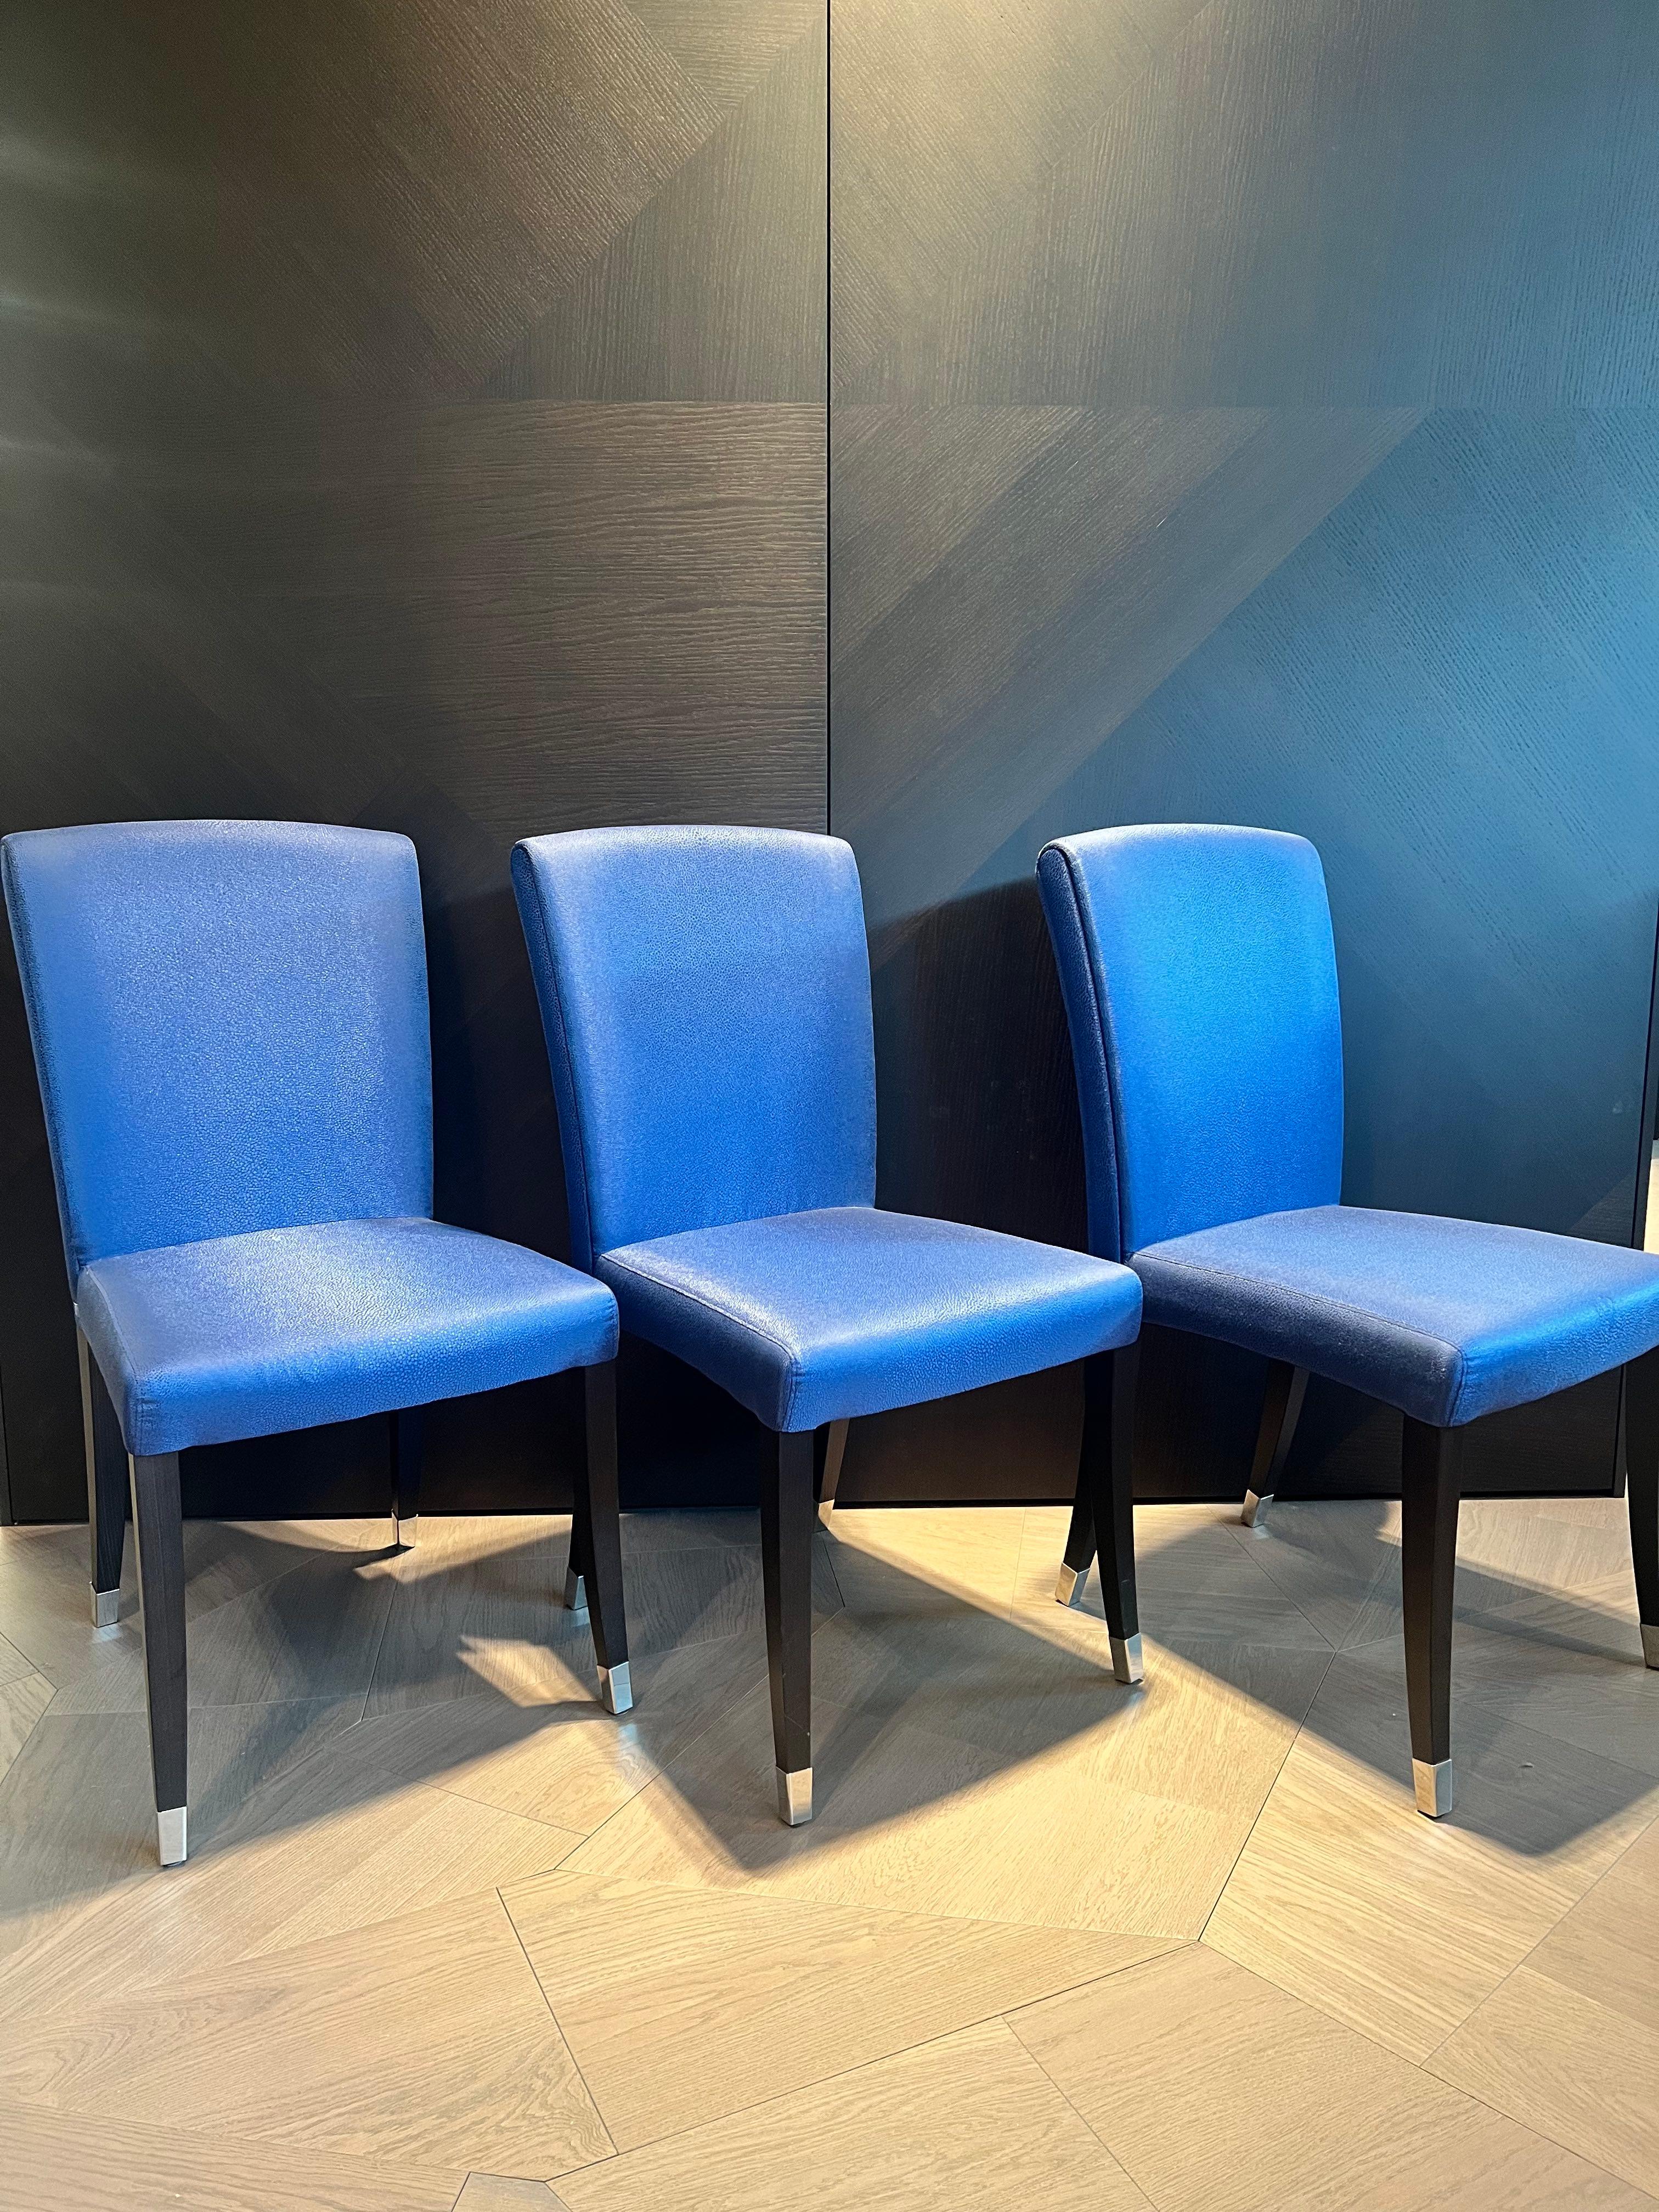 Ce magnifique ensemble de 6 chaises dinging originales FENDI CASA  Les `Elisa` sont très belles et uniques dans leur apparence classique mais moderne. Ils sont recouverts d'un textile de haute qualité bleu légèrement brillant et portent le logo